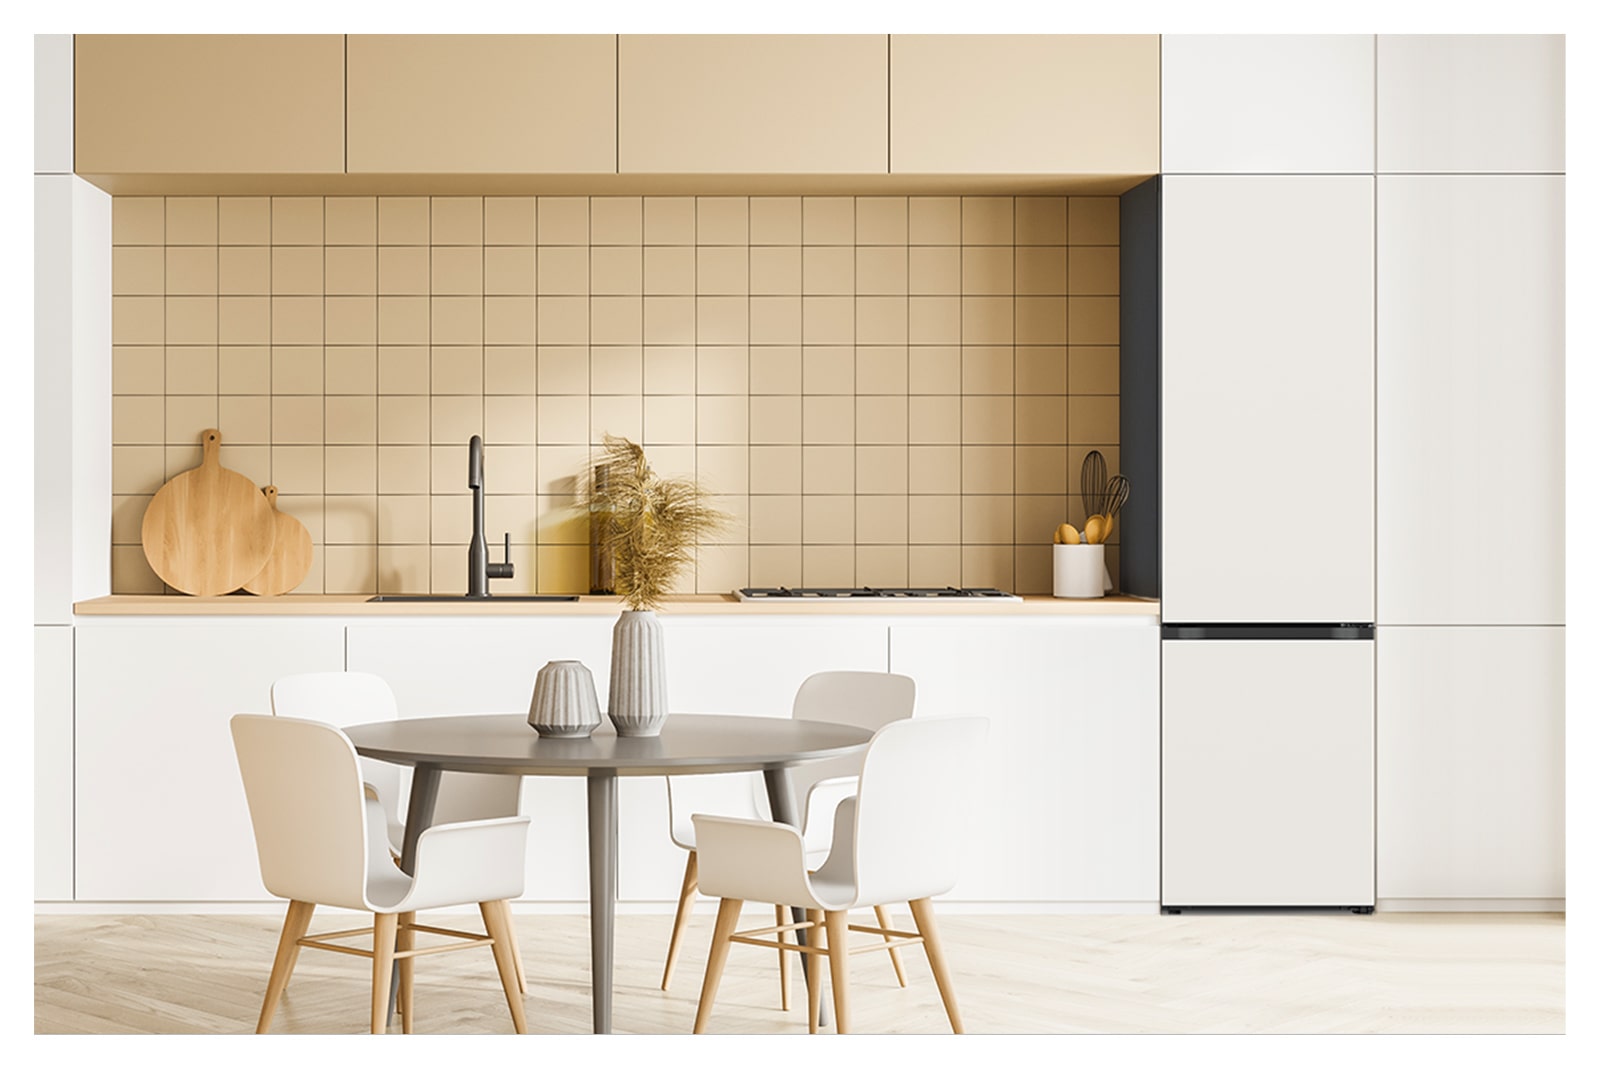 На ней изображен туманно-бежевый цвет LG Bottom Freezer Objet Collection, размещенный на кухне, который естественно сочетается с мебелью вокруг.